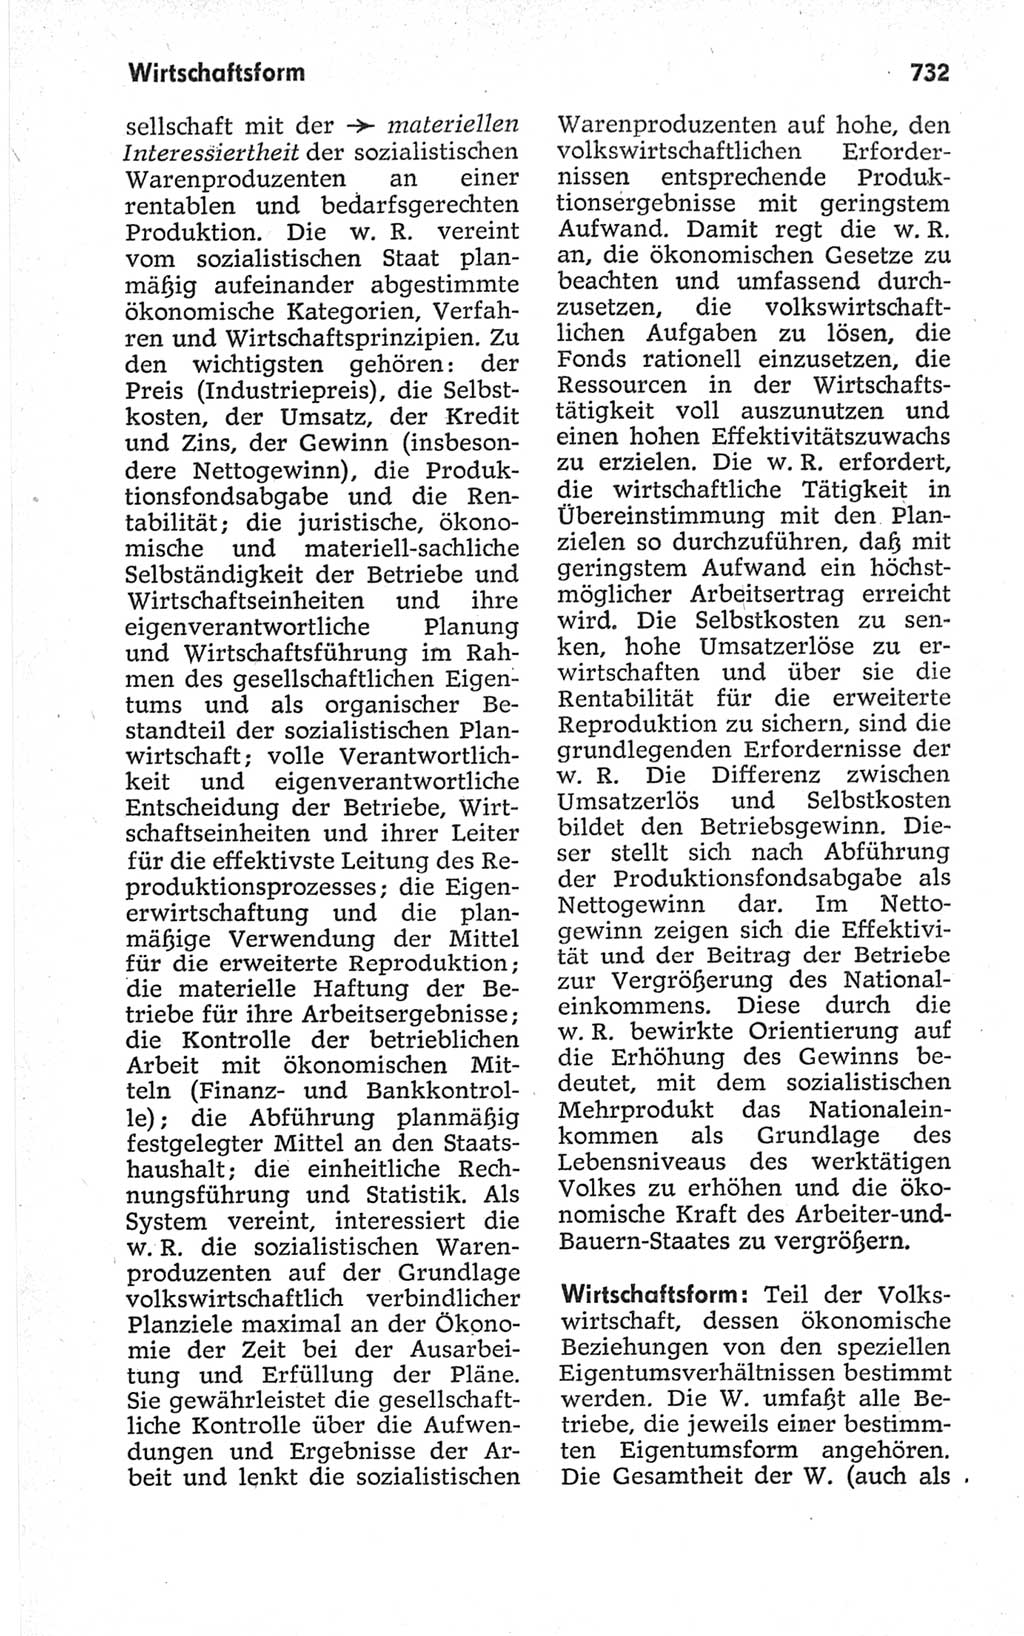 Kleines politisches Wörterbuch [Deutsche Demokratische Republik (DDR)] 1967, Seite 732 (Kl. pol. Wb. DDR 1967, S. 732)